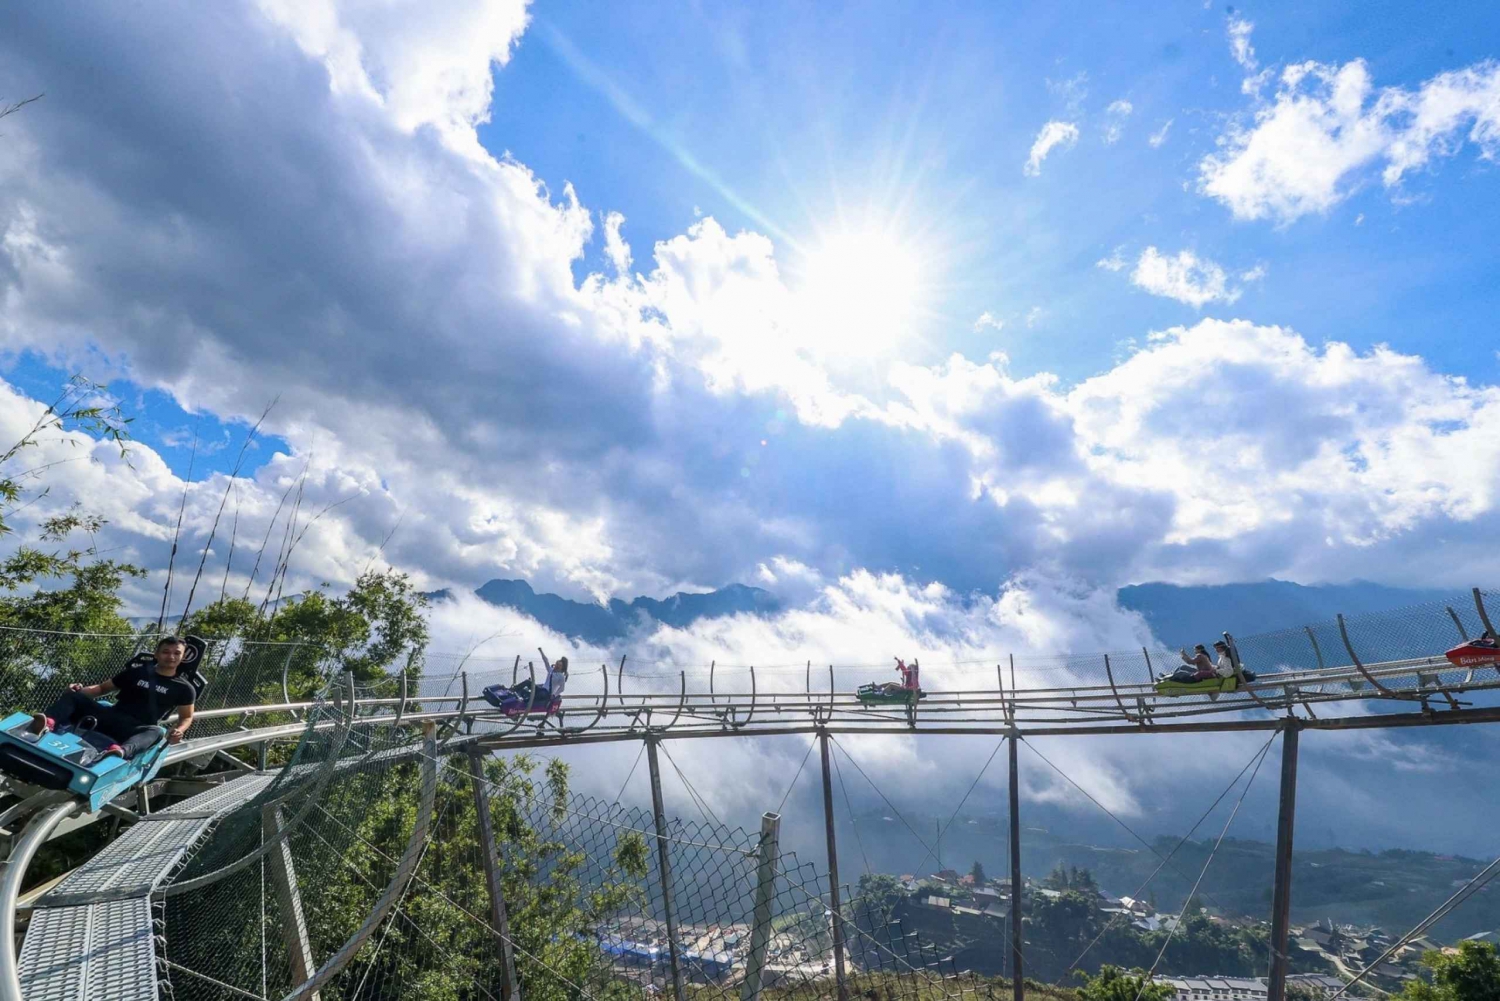 Alpine Coaster Ban Mong Erlebnis in Sapa - Vietnam